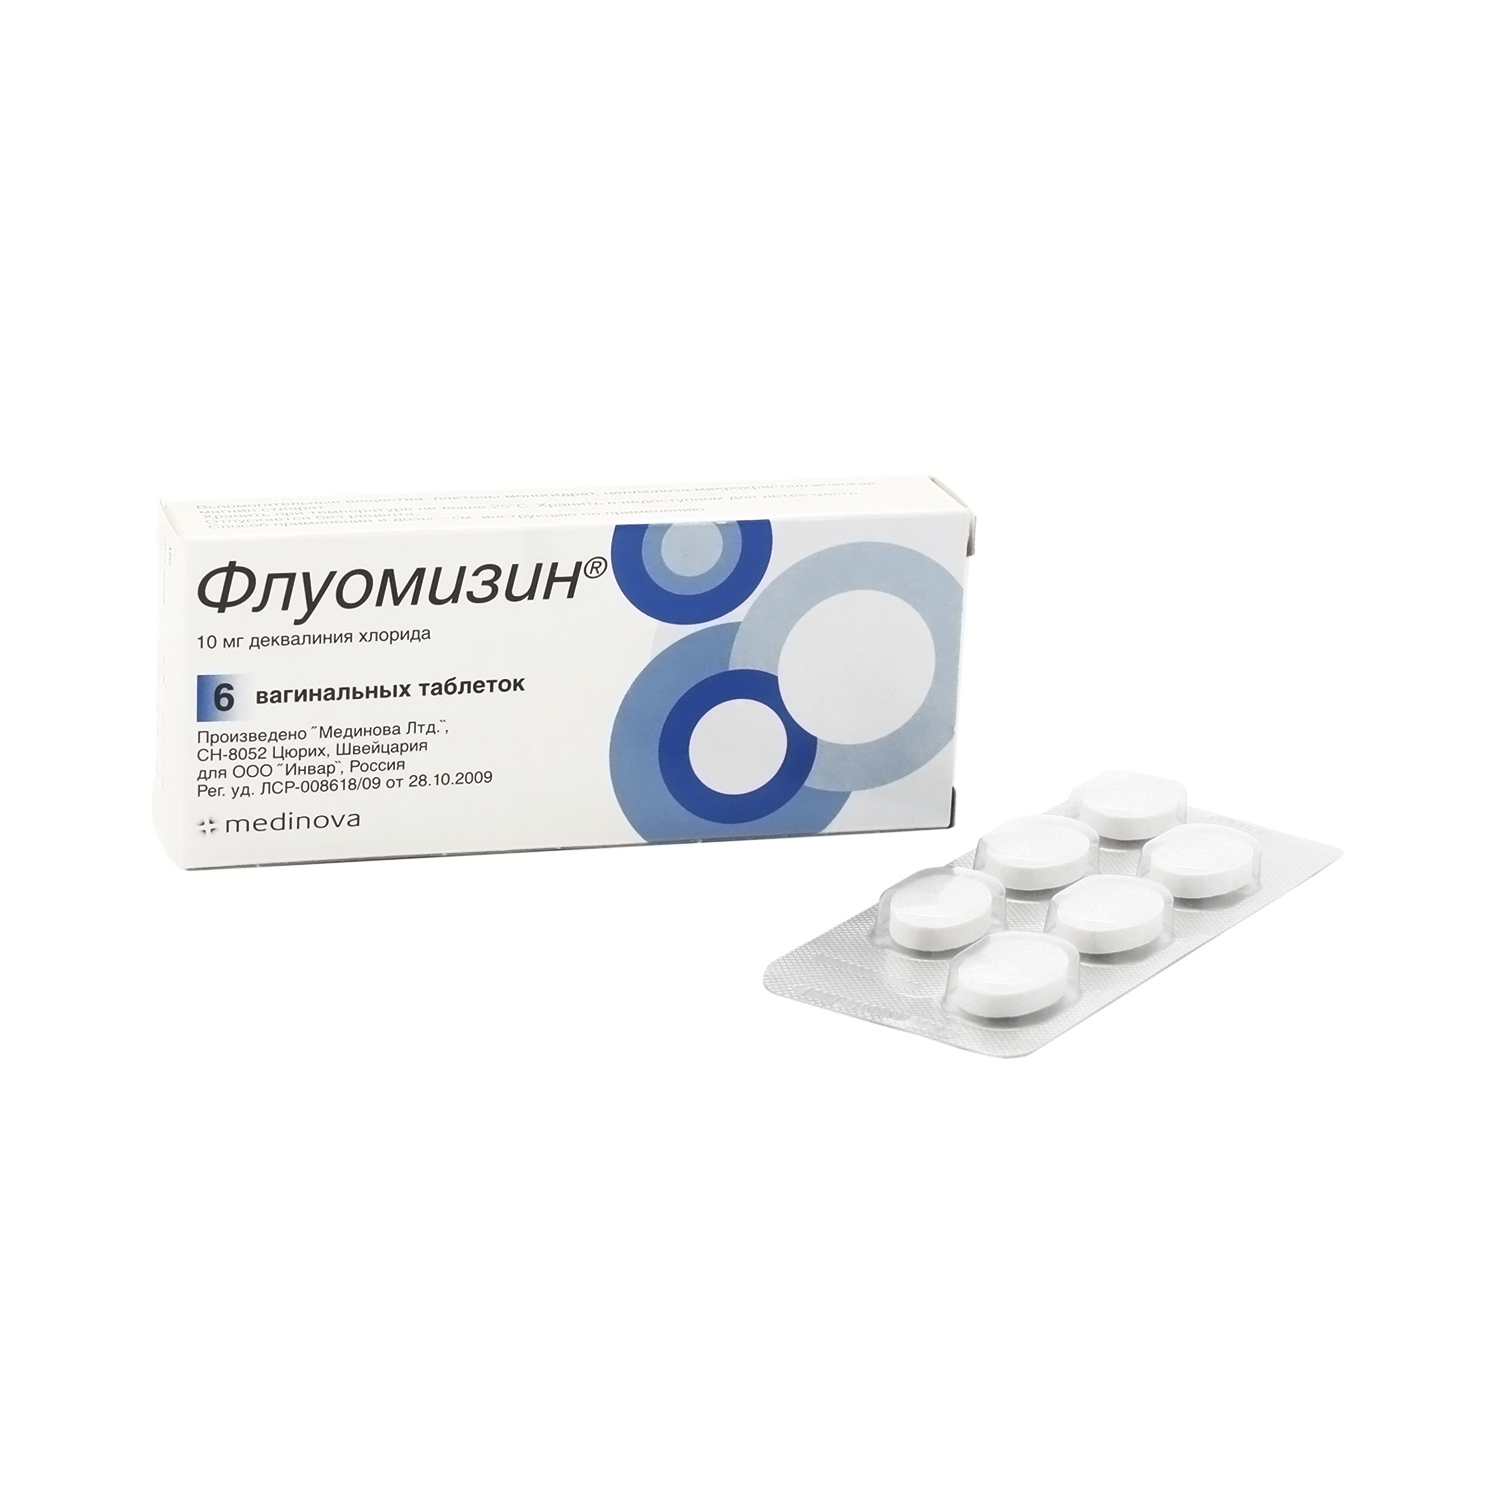 Флуомизин Таблетки вагинальные 10 мг 6 шт  по цене 919,0 руб в .